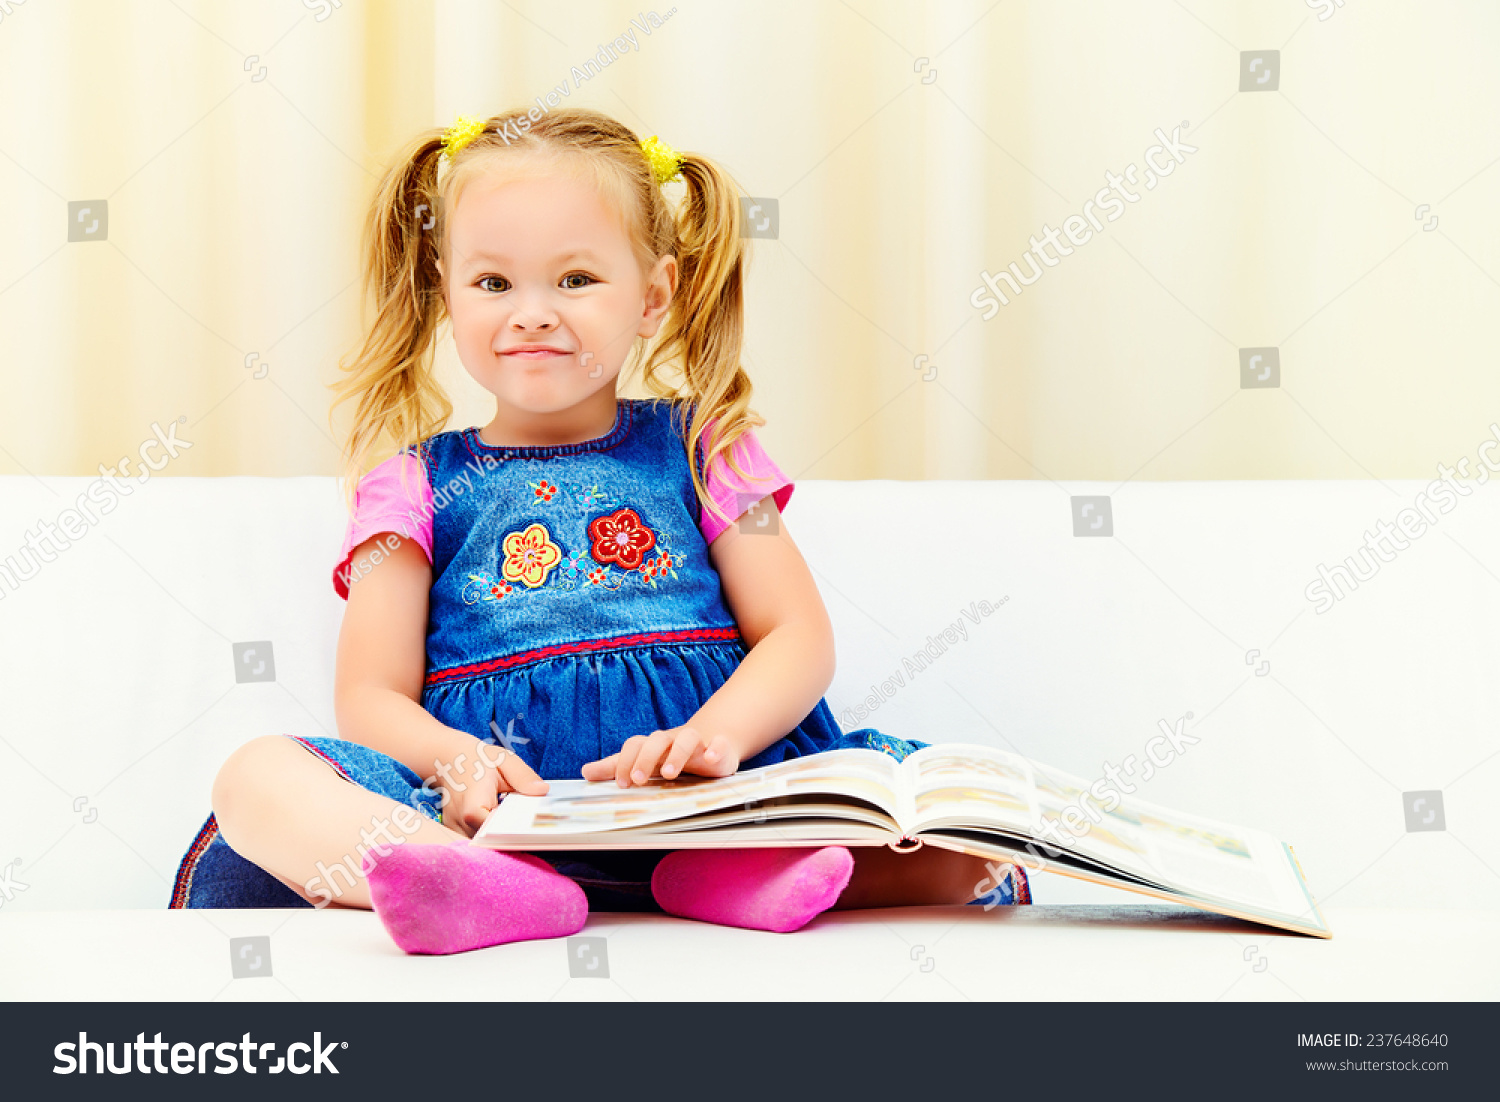 漂亮的小女孩坐在沙发上,看着一个儿童图画书